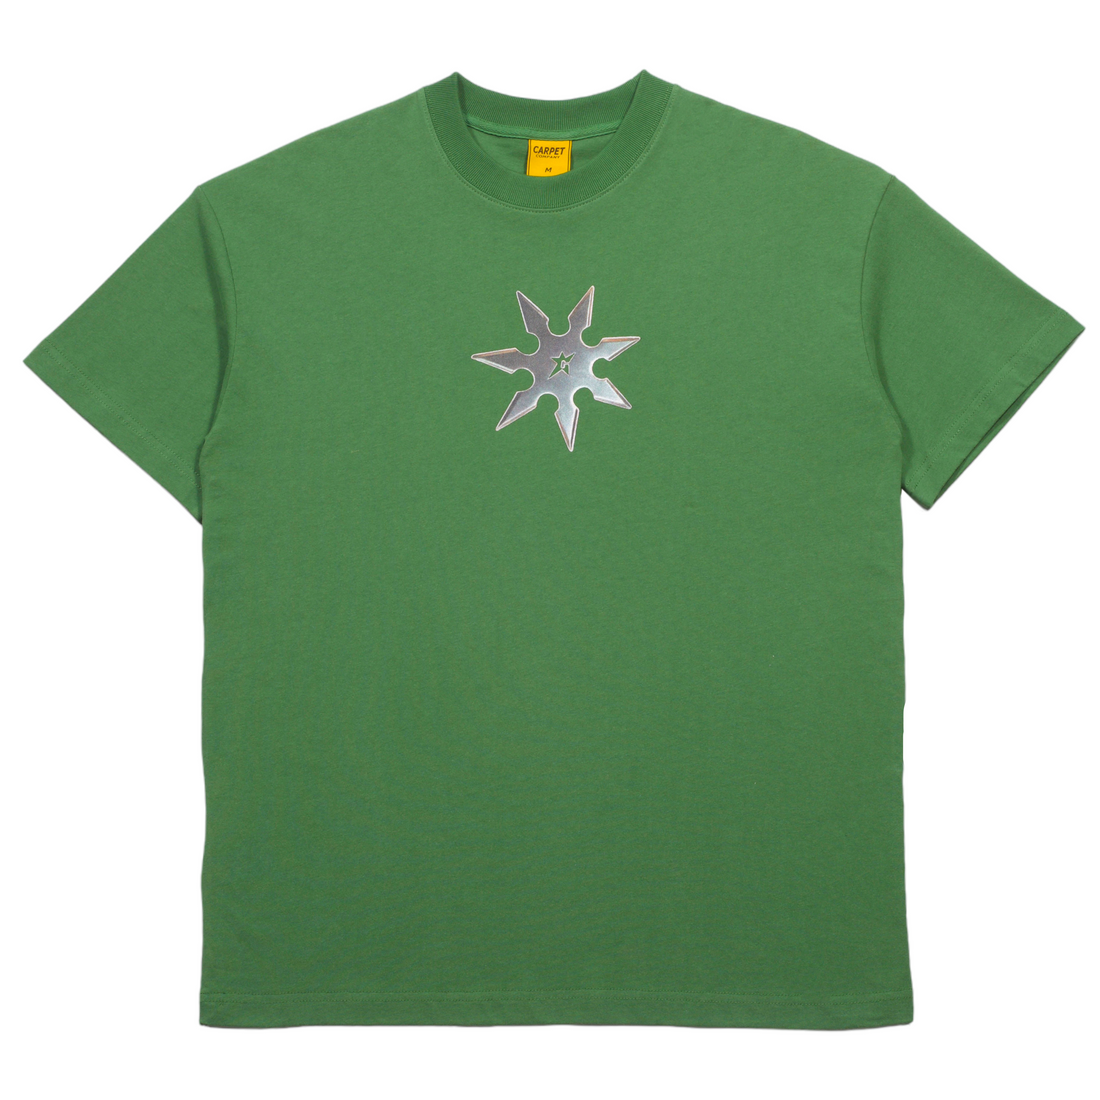 Carpet Throwing Star T-Shirt (Green